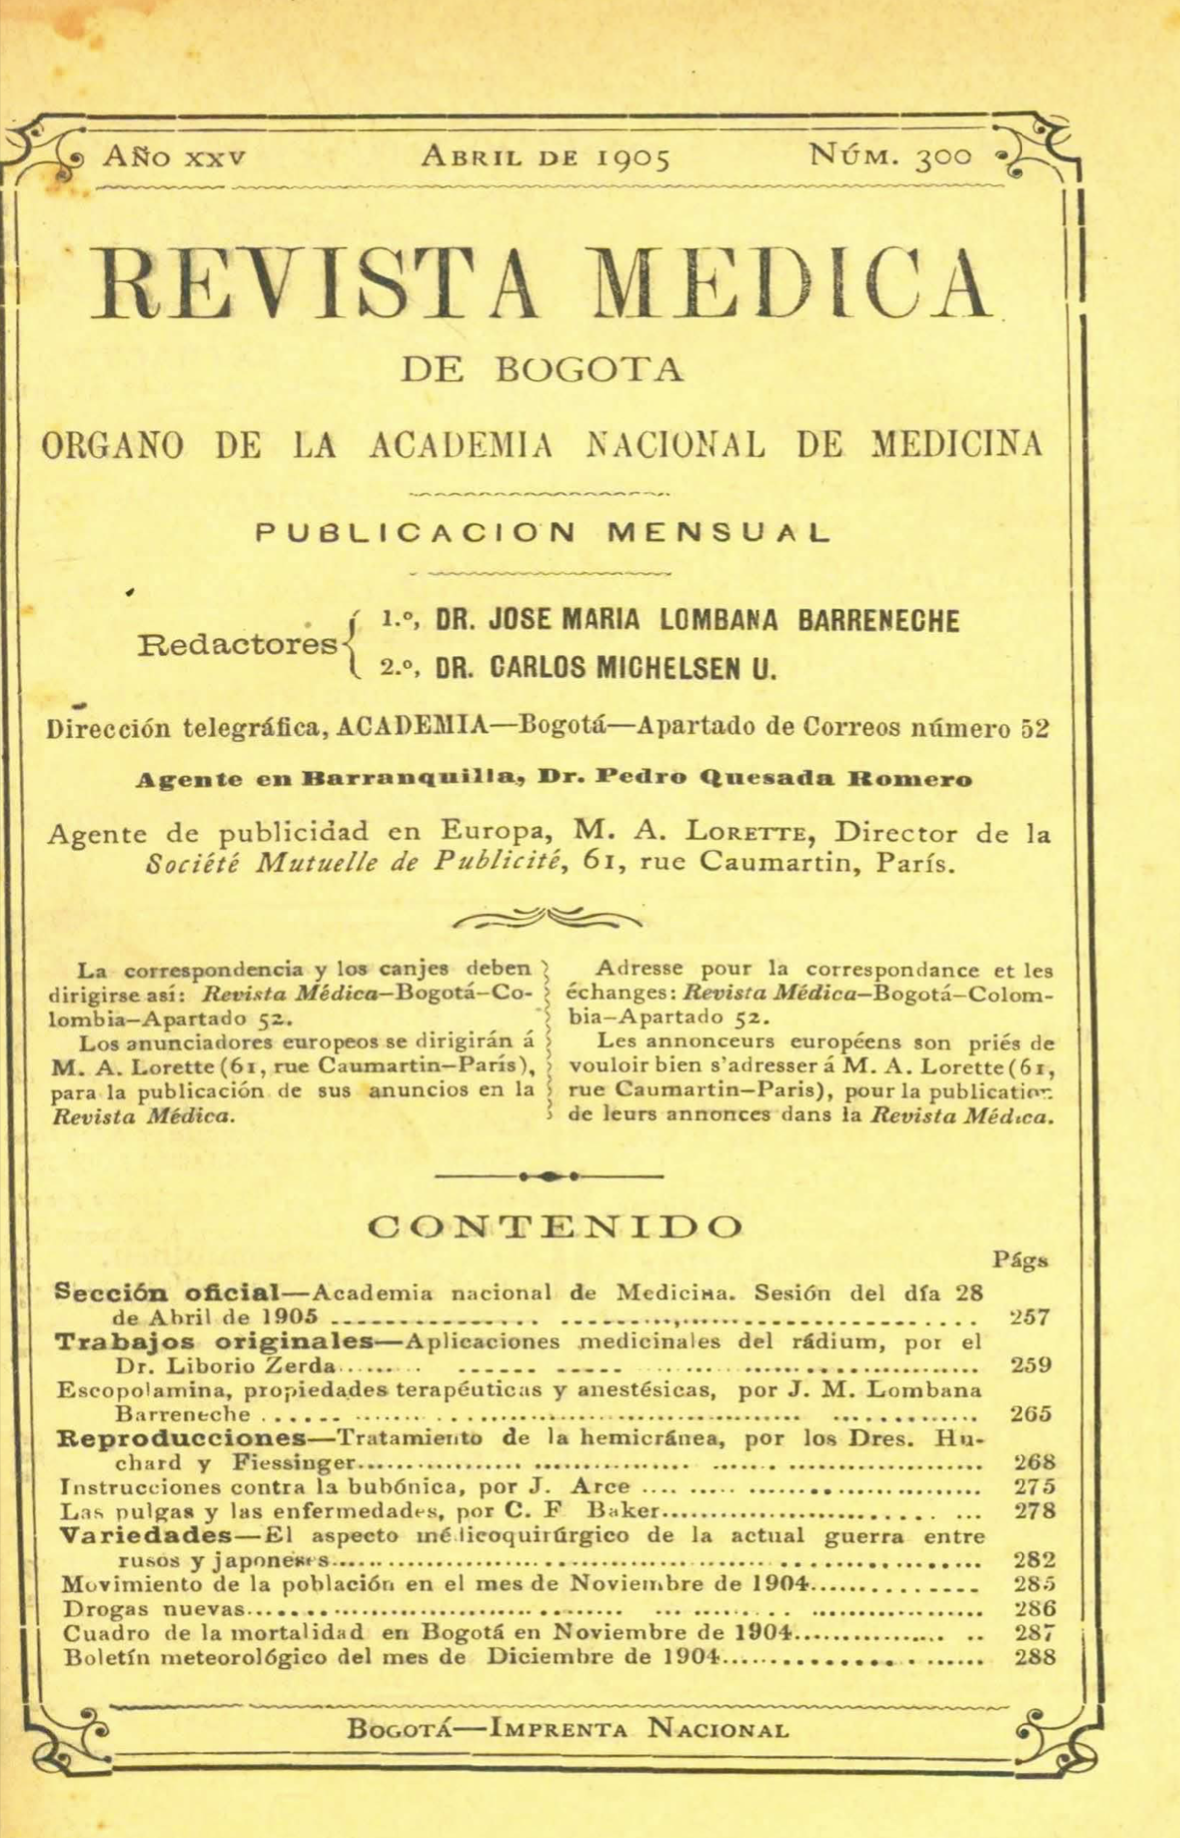 					Ver Vol. 25 Núm. 300 (1905): Revista Médica de Bogotá. Año XXV. Abril de 1905. Núm. 300
				